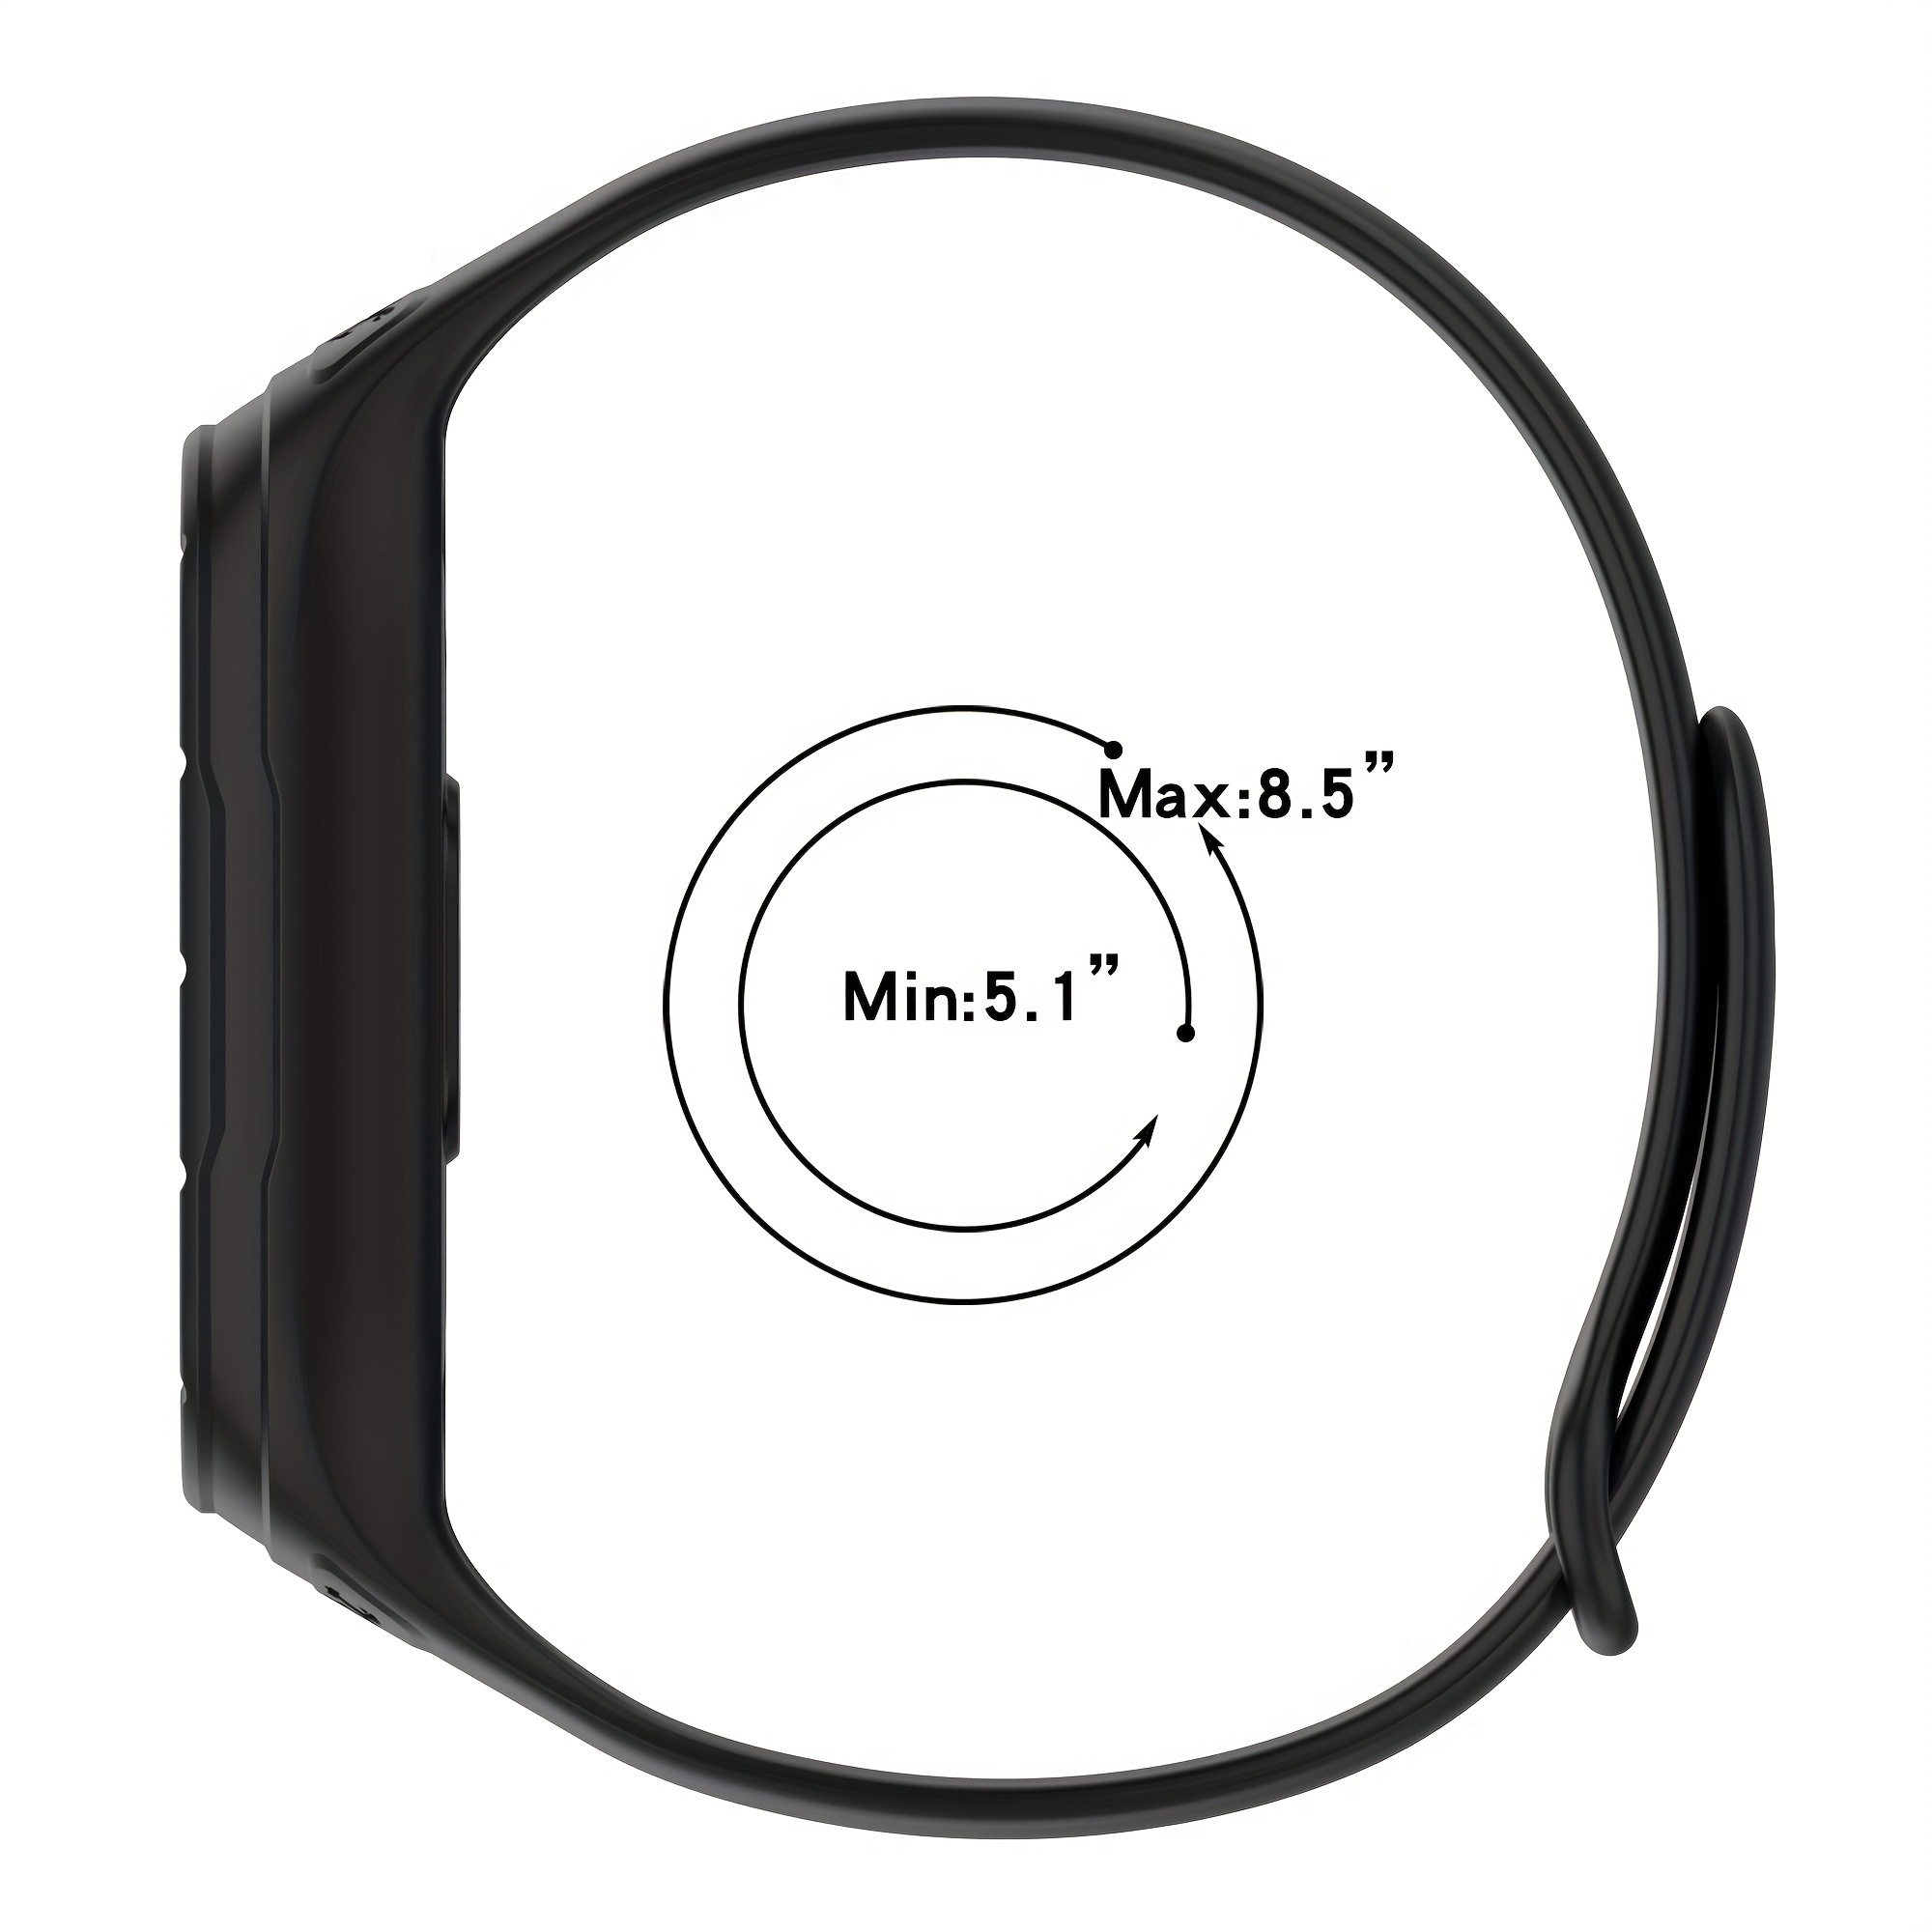  Xiaomi Mi Smartwatch Black : Electronics